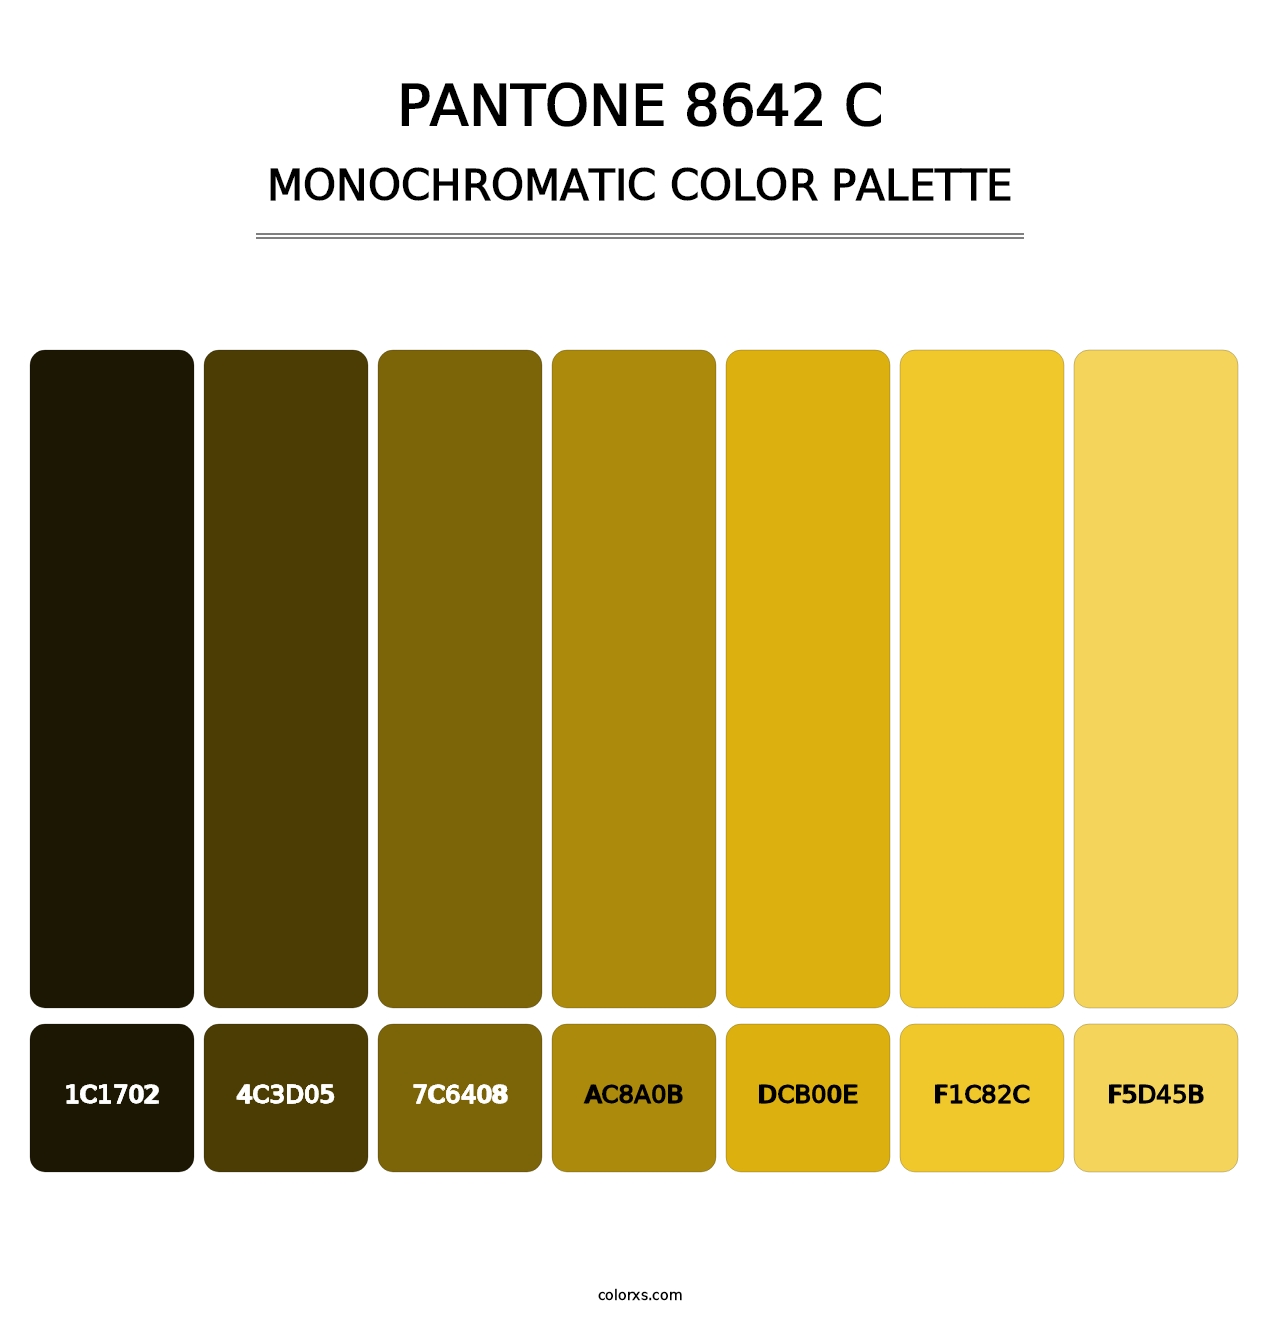 PANTONE 8642 C - Monochromatic Color Palette